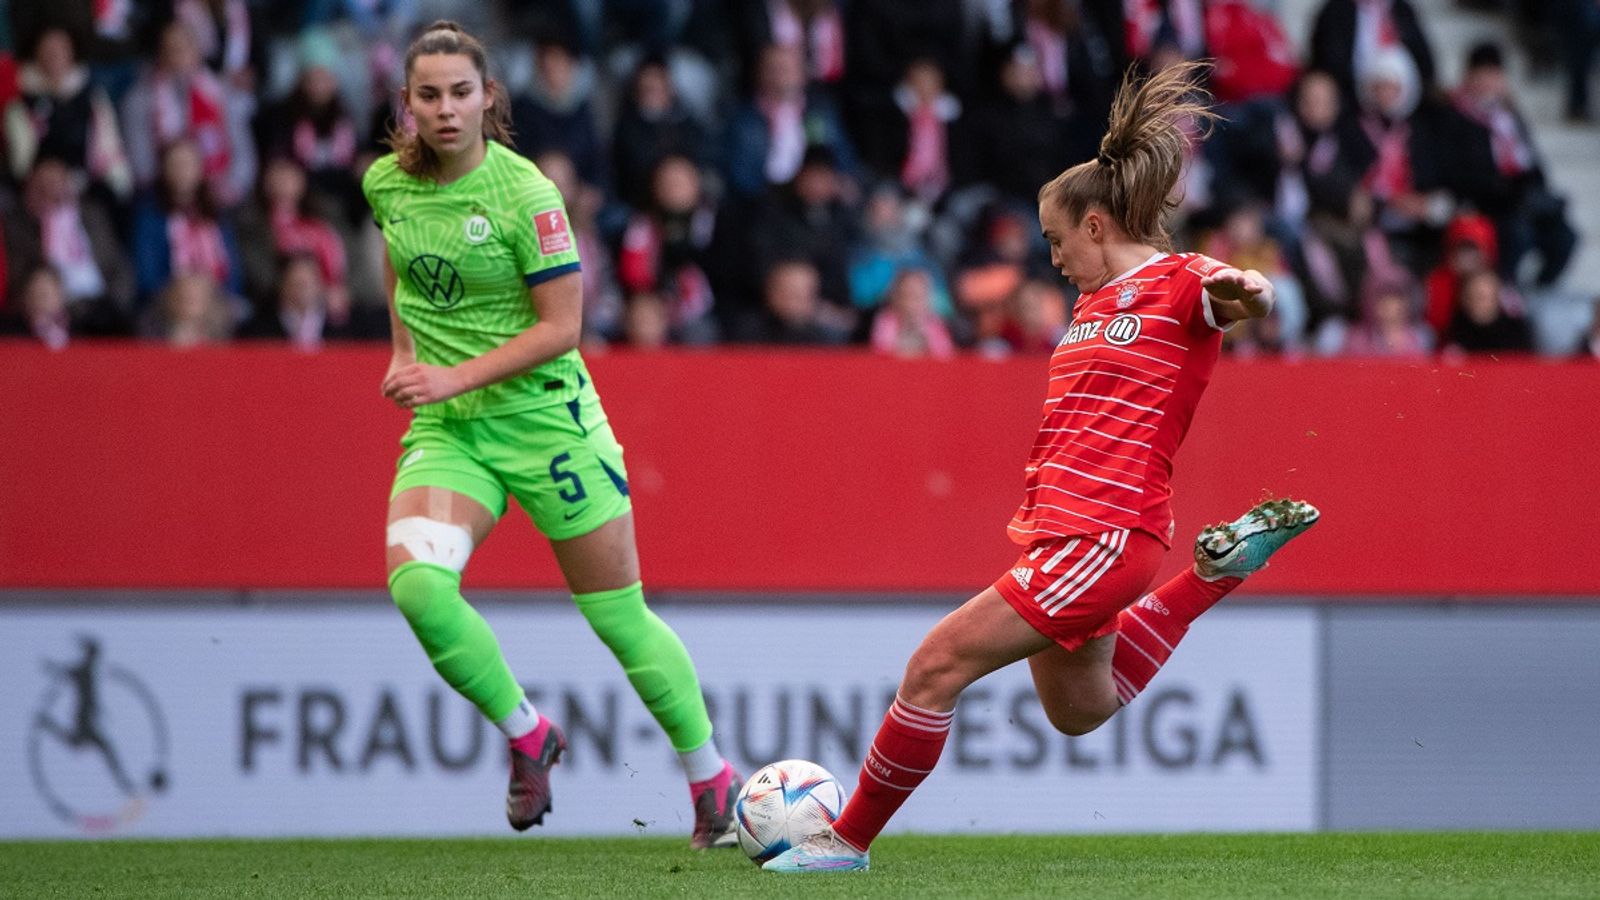 Frauen DFB-Pokal Halbfinale LIVE Übertragung im TV und Stream Fußball News Sky Sport